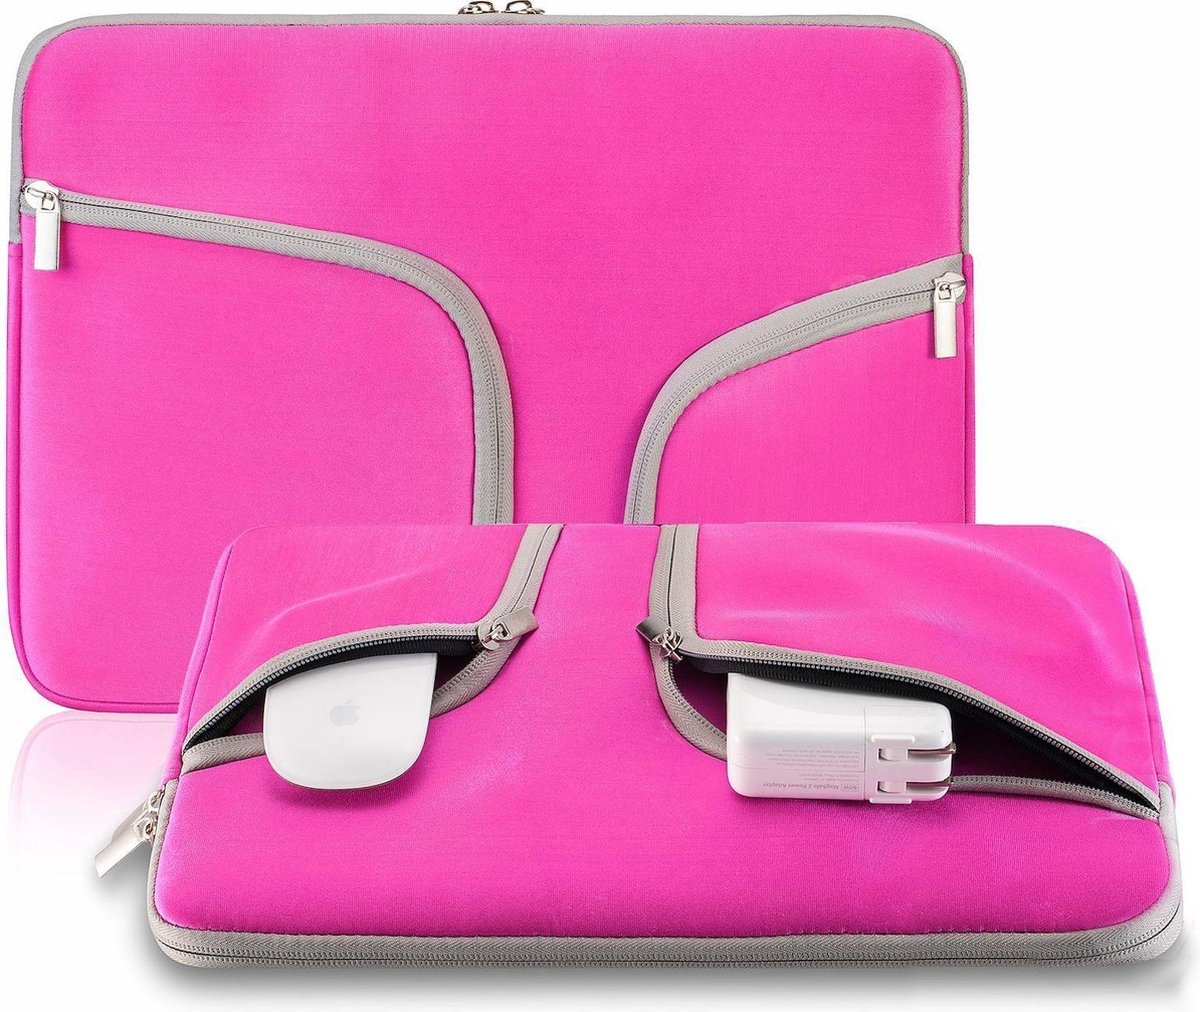 Laptop Sleeve met rits voor o.a. MacBook Pro 13.3 / MacBook Retina 13.3 inch - Laptoptas - Hot Pink